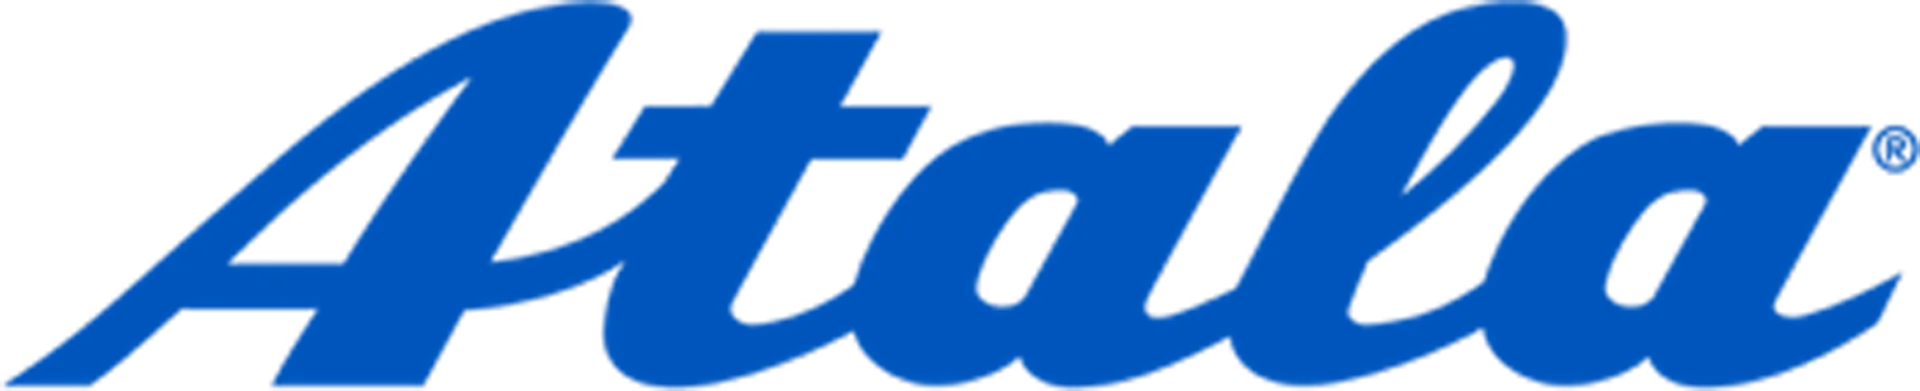 ATALA logo